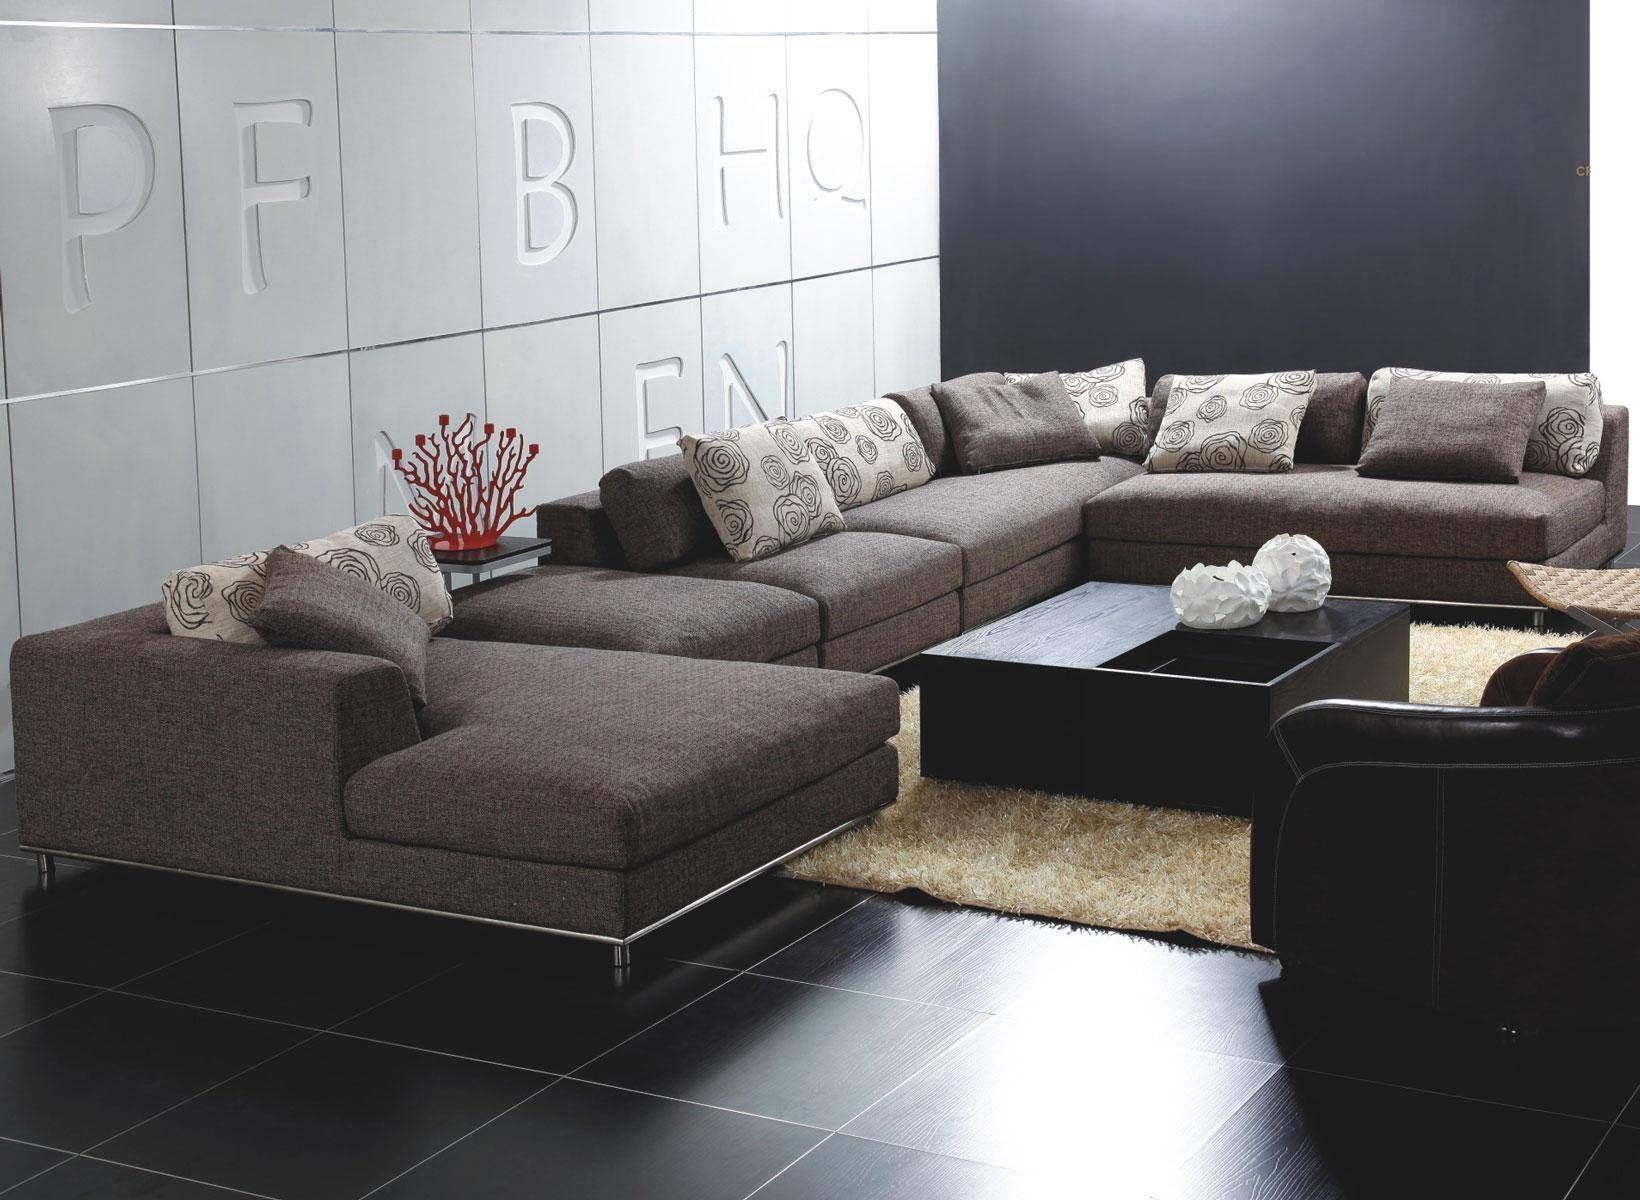 Sofa : Simple Contemporary Fabric Sofas Home Design Great Pertaining To Contemporary Fabric Sofas (View 1 of 30)